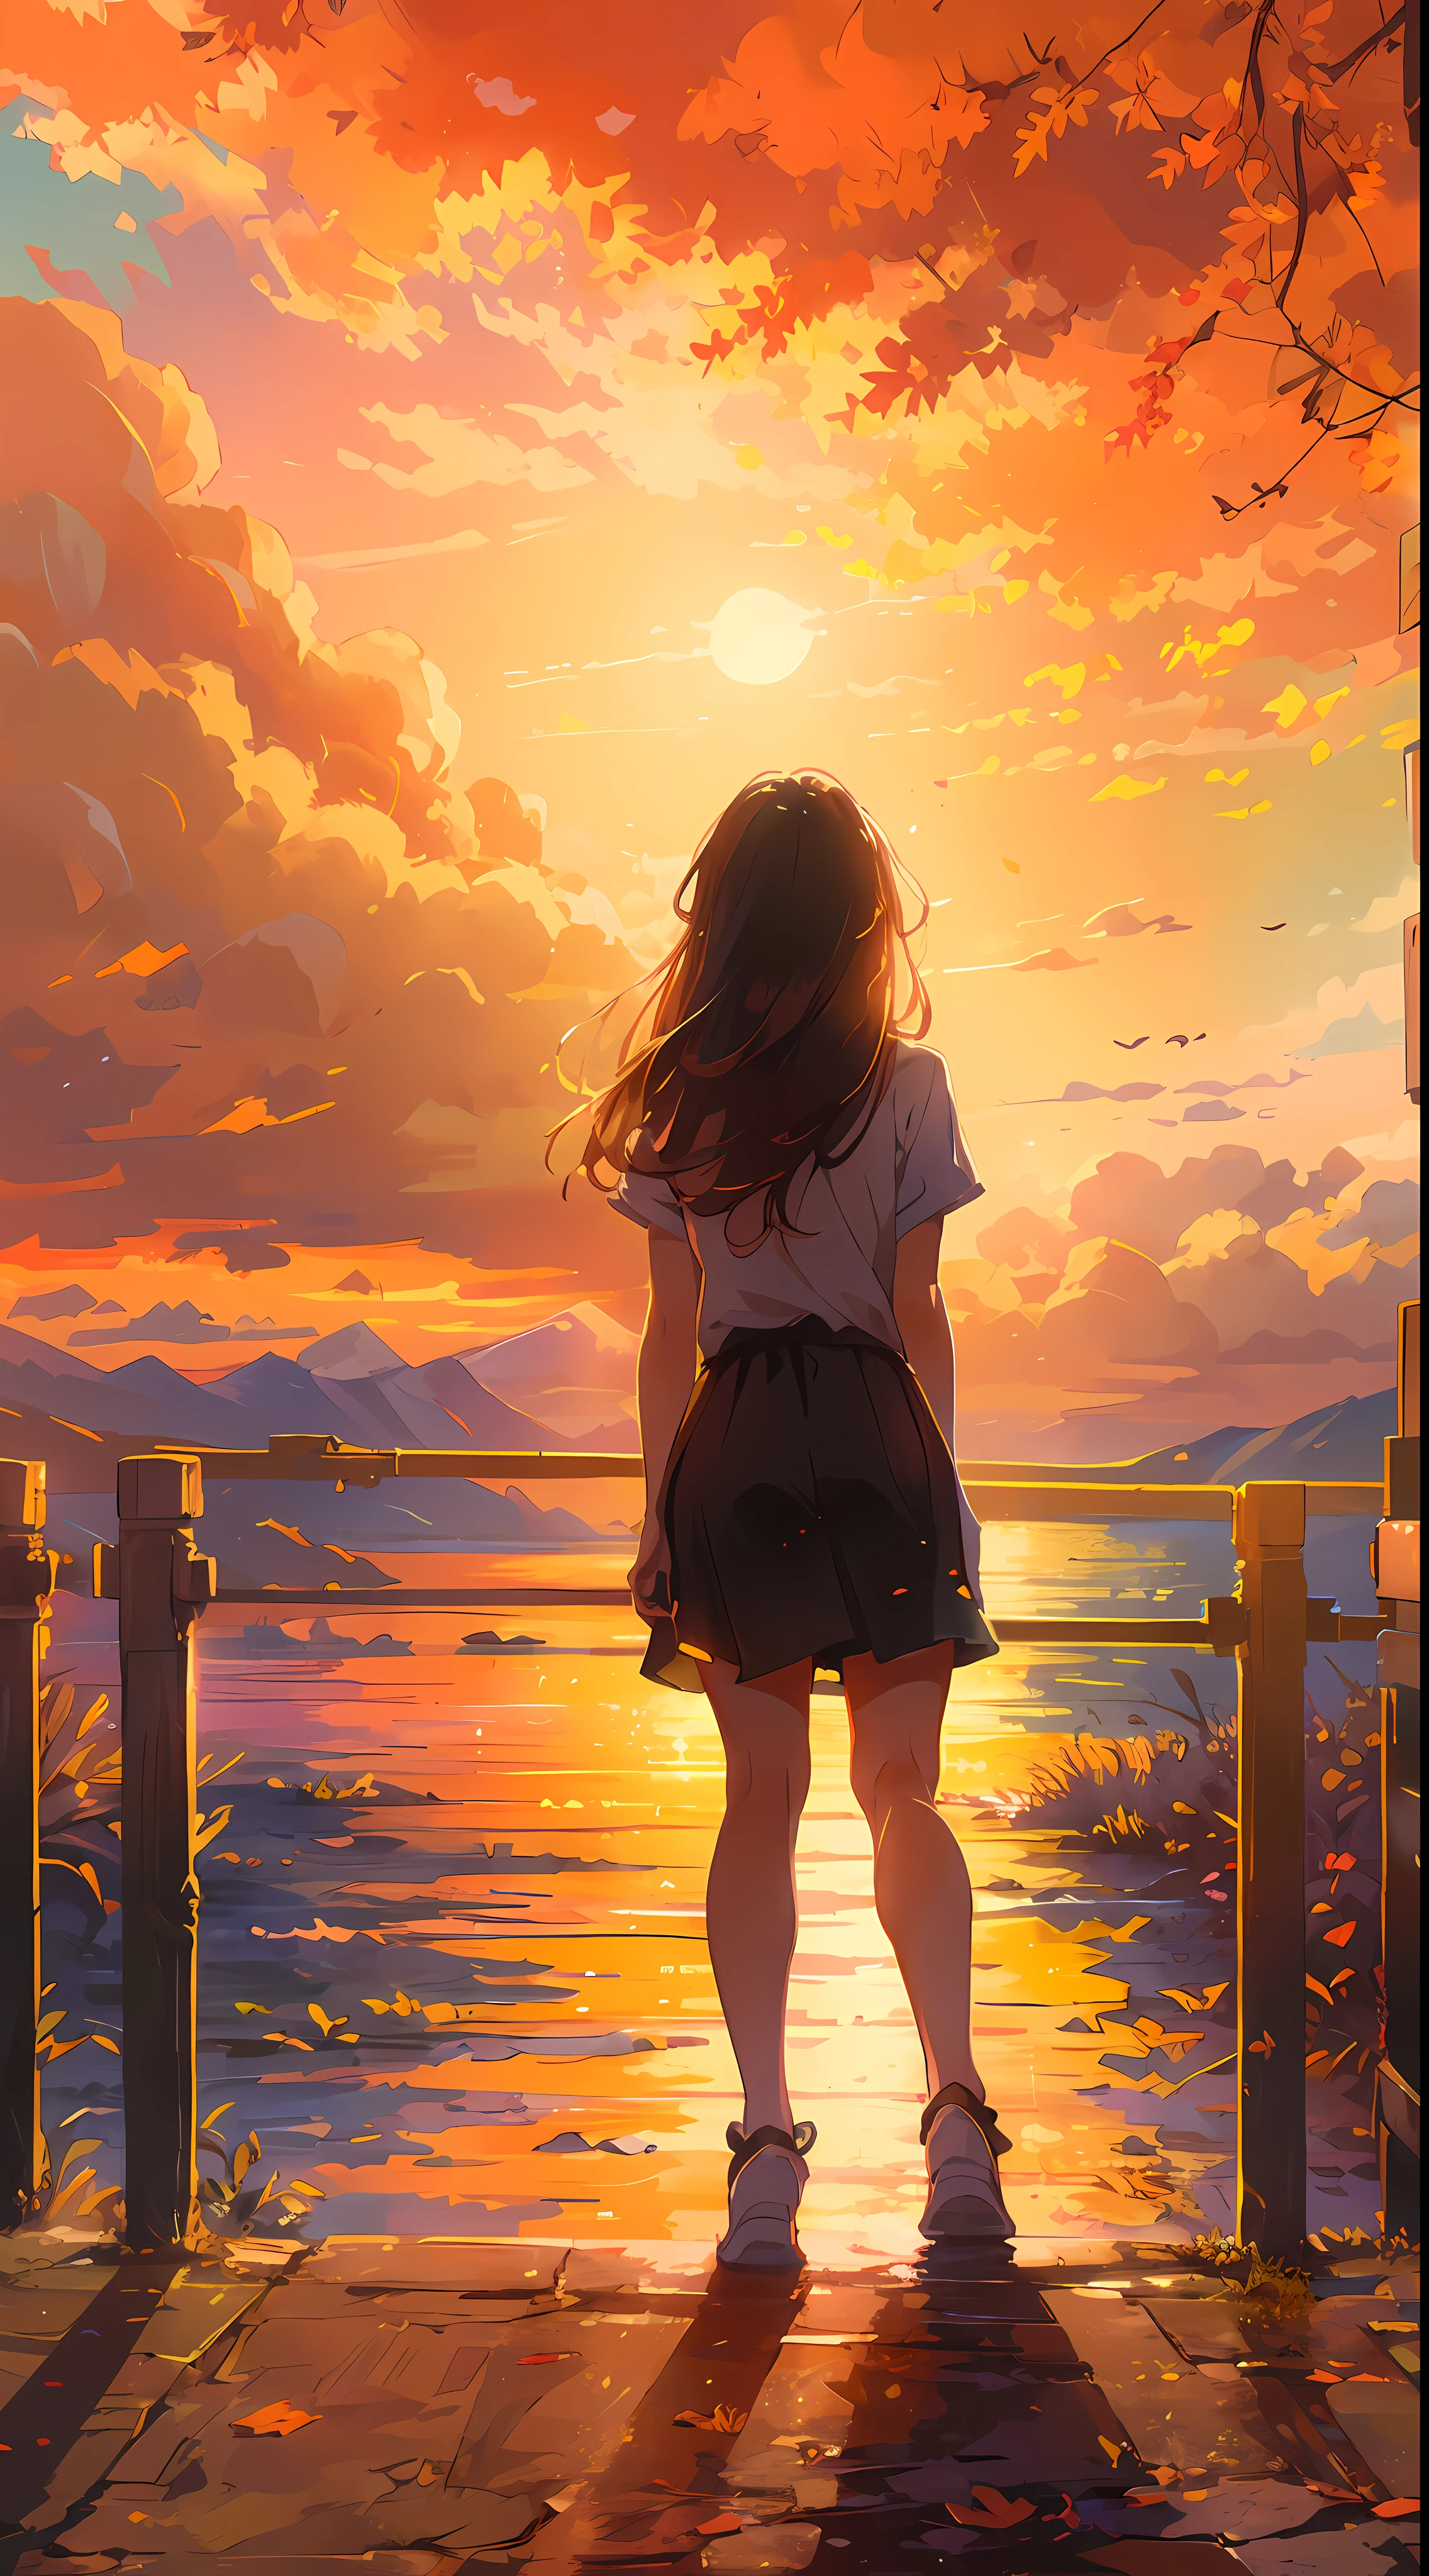 "Uma cena hipnotizante do pôr do sol, uma garota olhando para ele, por trás, (garota focada0.6), banhado pelos tons dourados da luz solar e das nuvens, emanando um espectro vibrante e inspirador. Obra de arte."